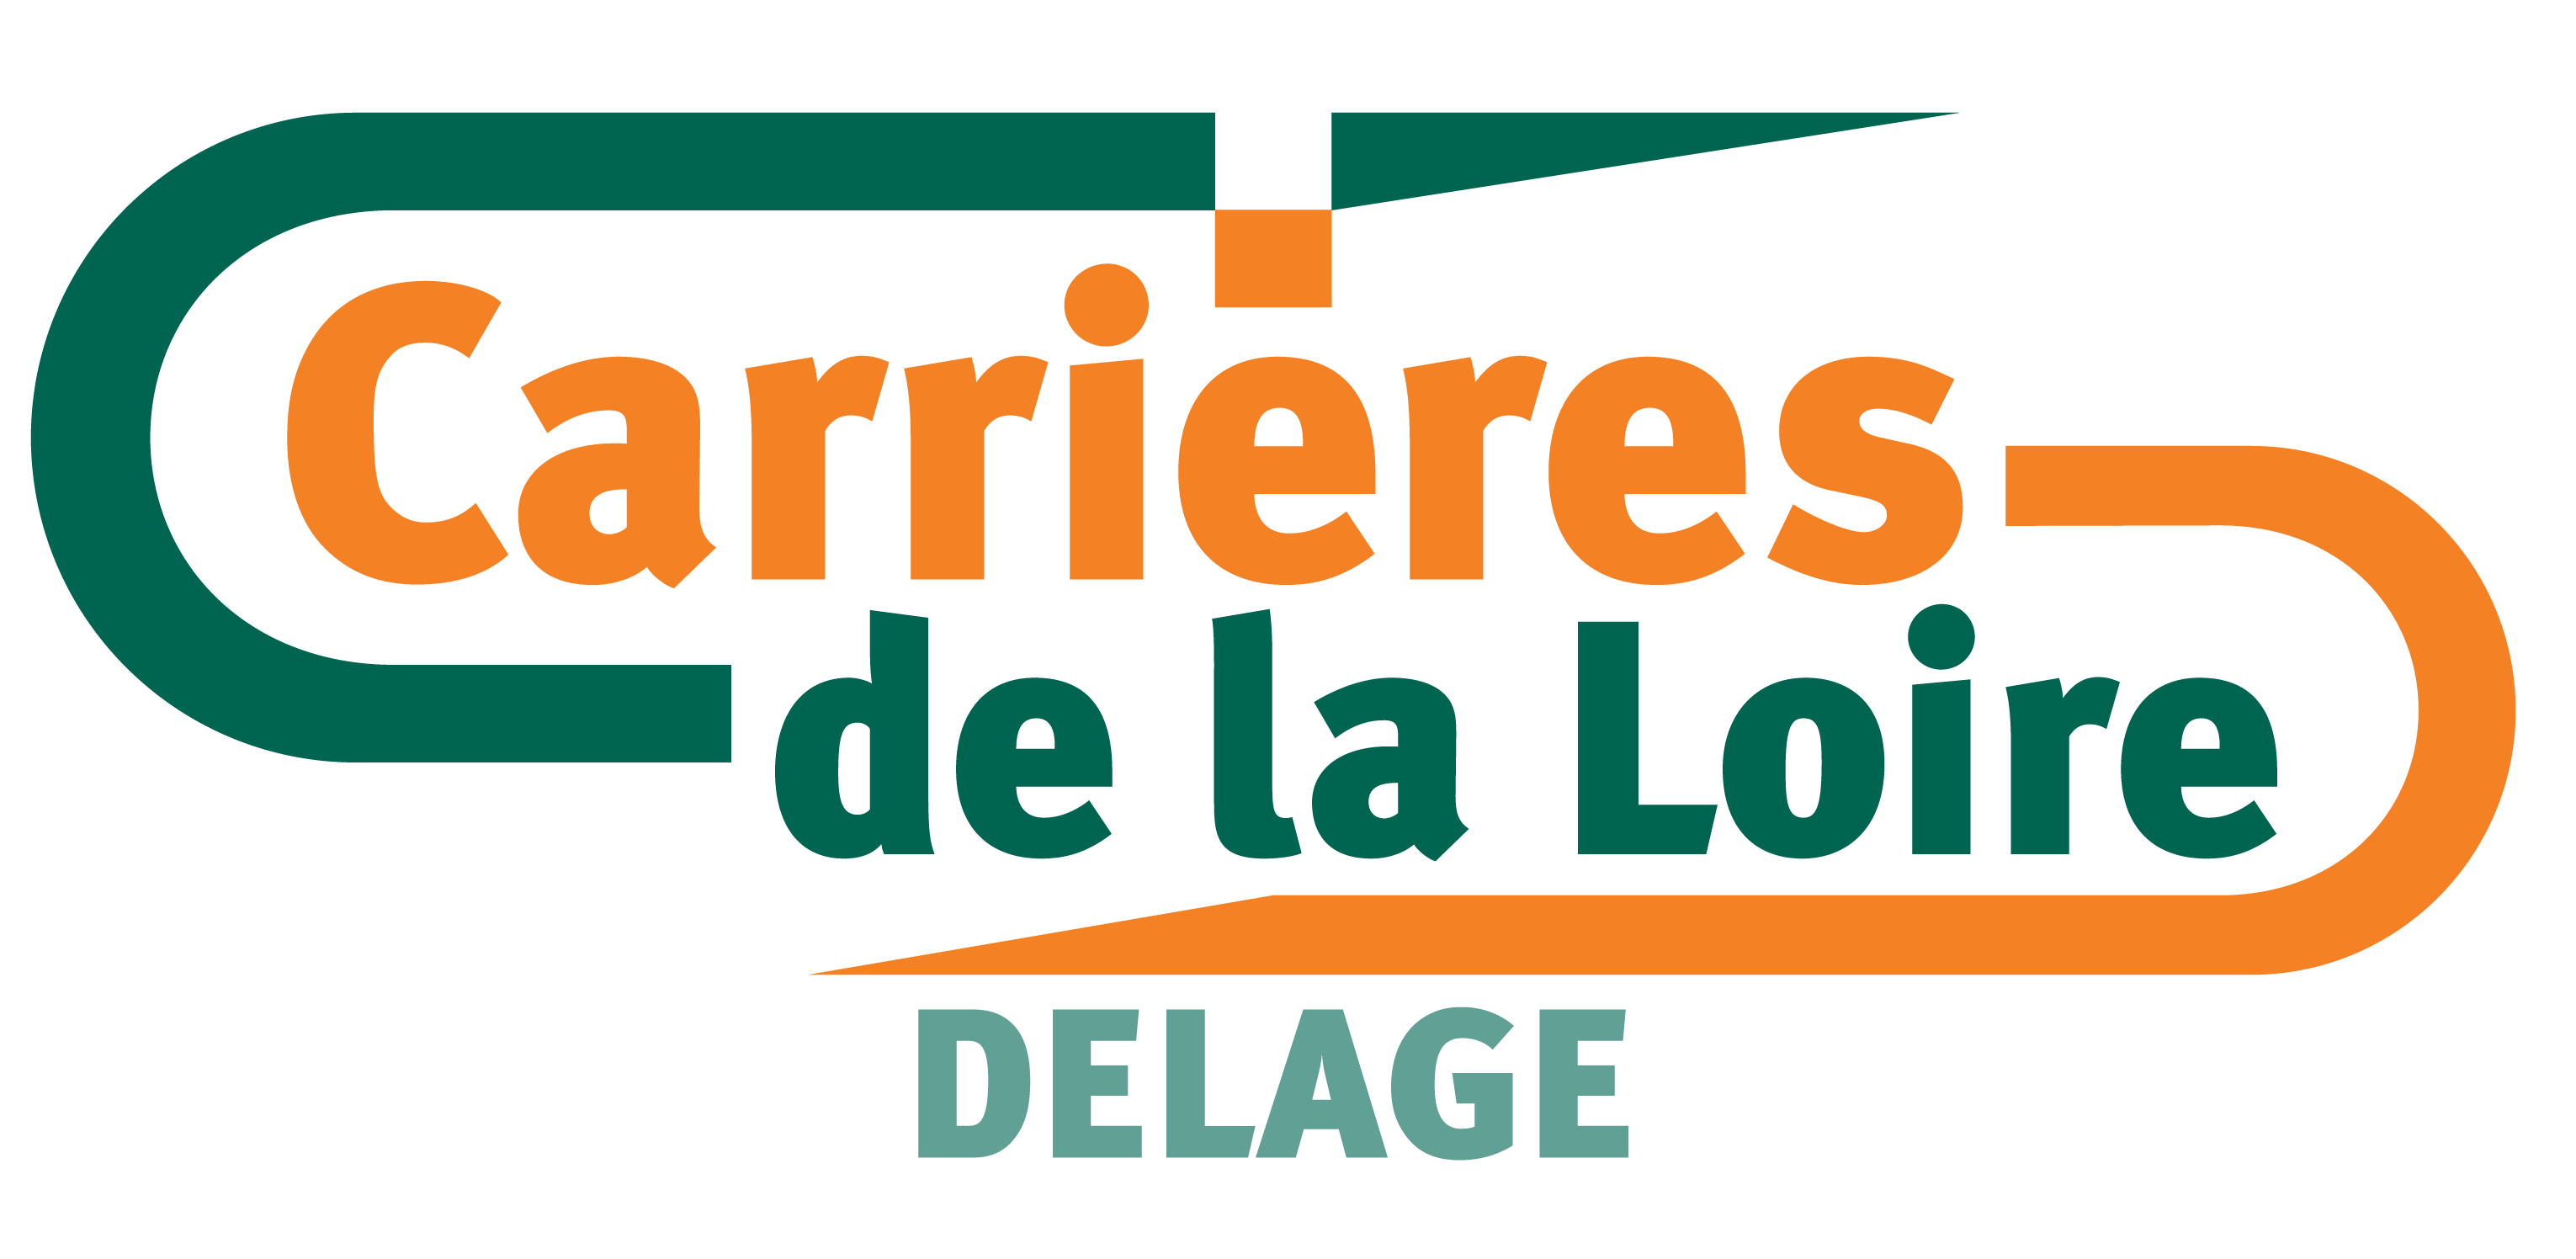 Carrières de la Loire